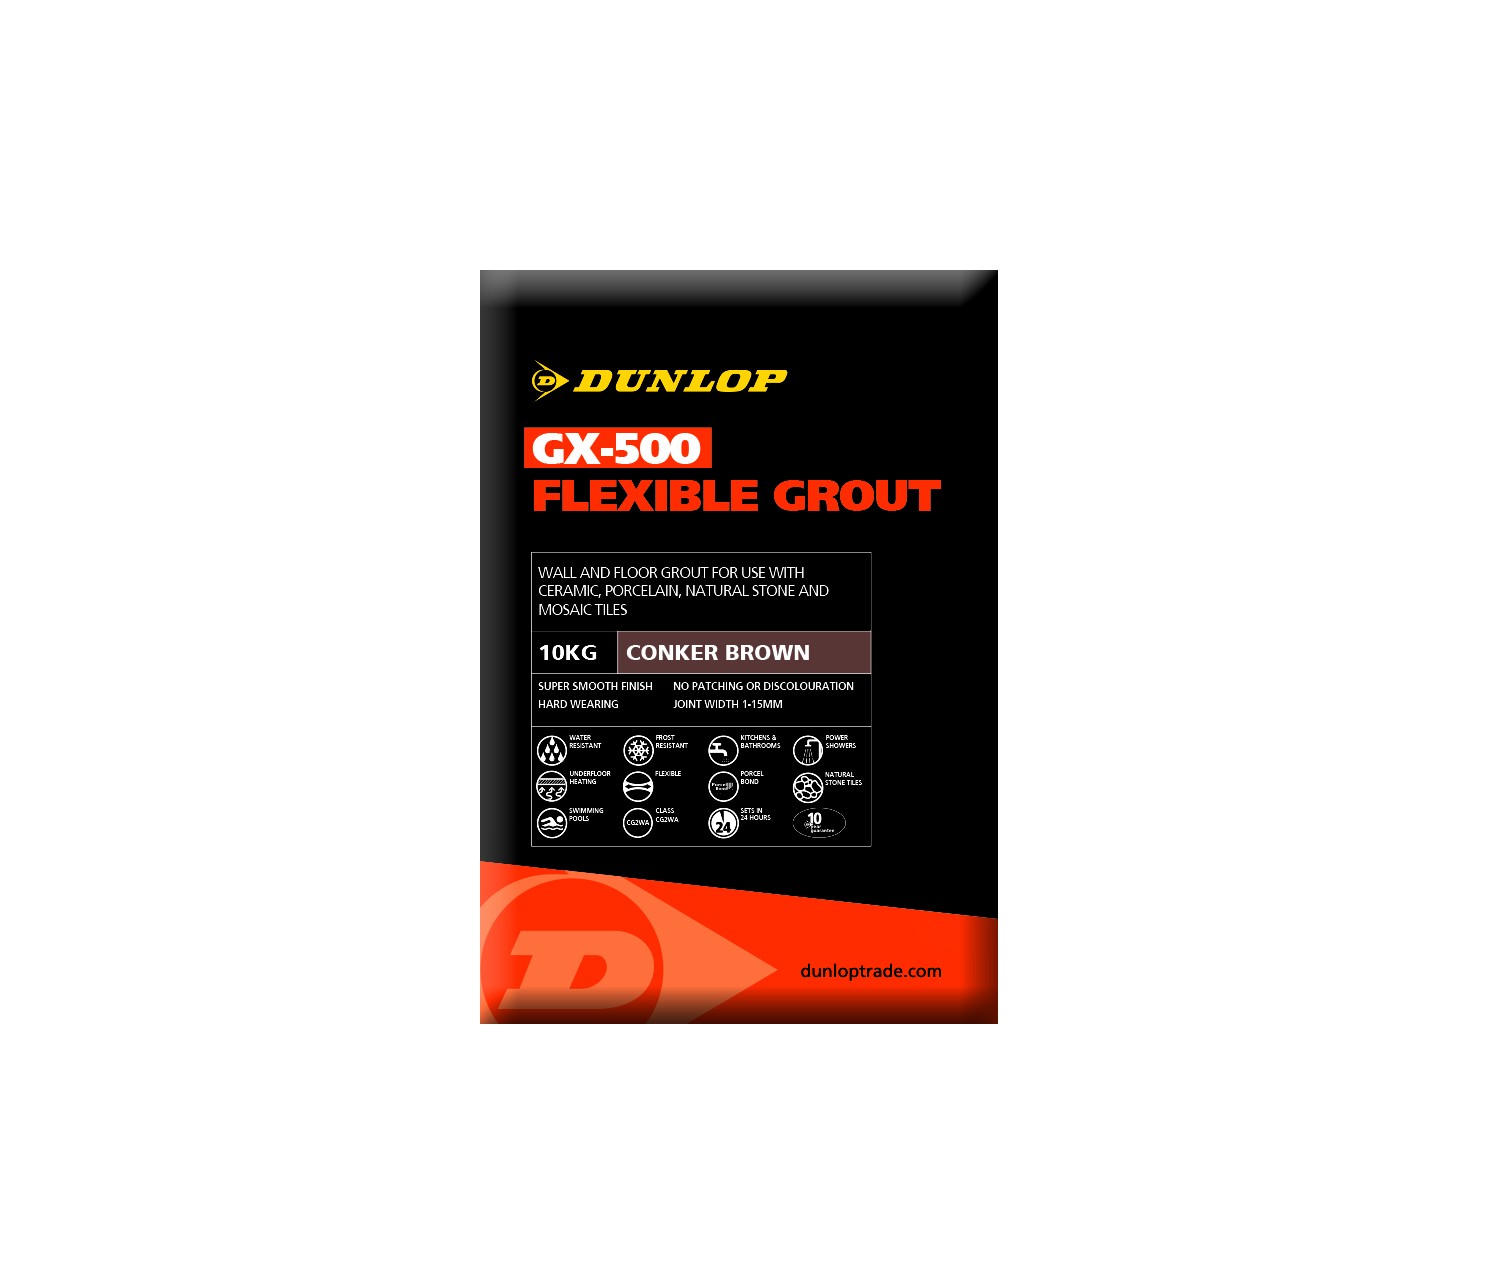 DUNLOP GX-500 FLEXIBLE GROUT GRAPHITE GREY 10KG [DUN25956]